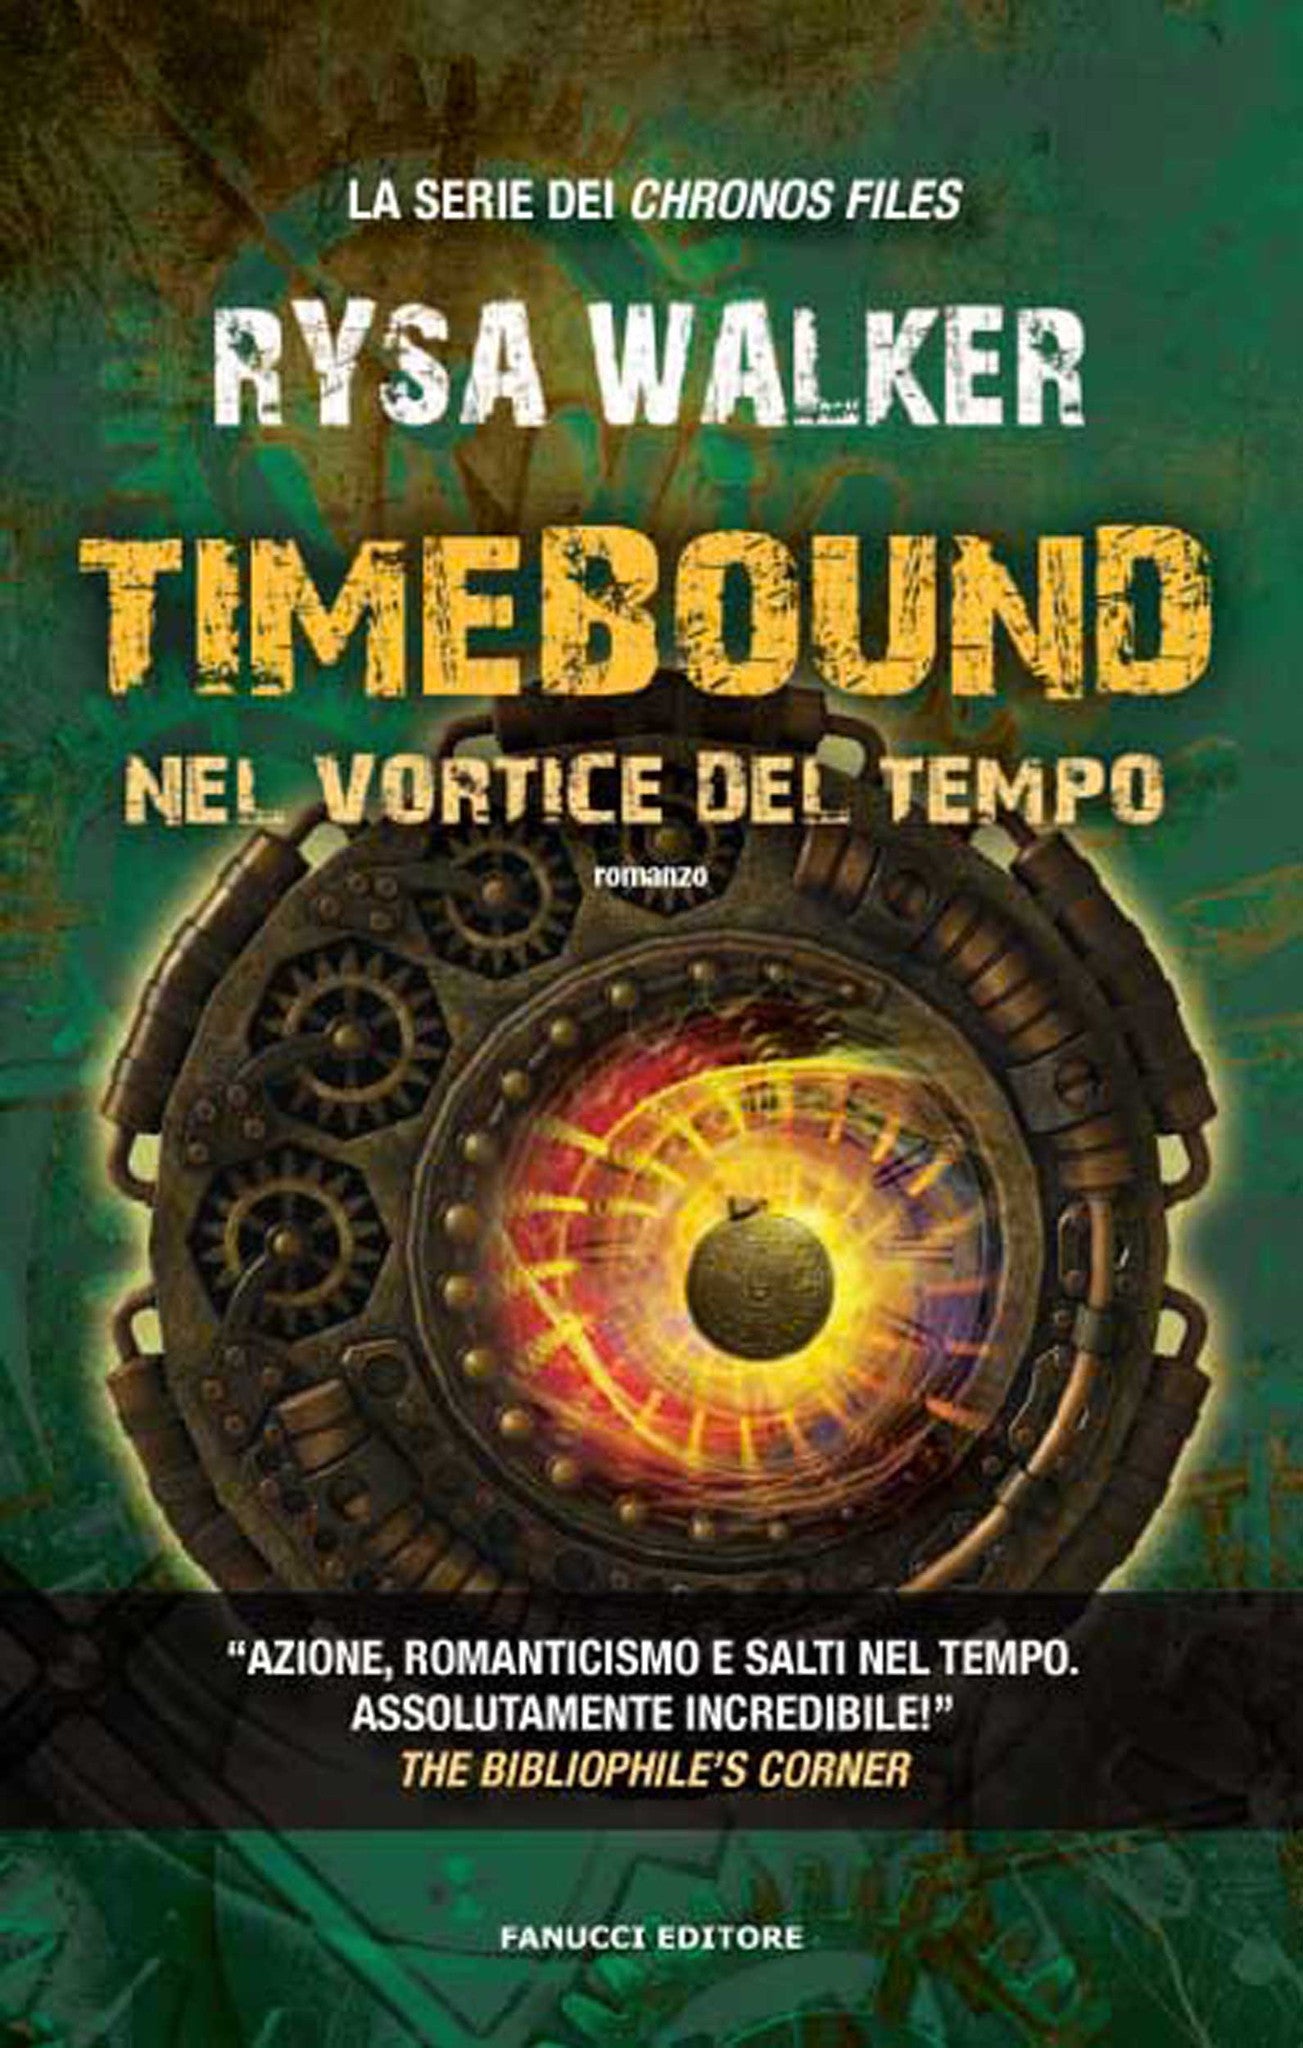 Timebound - Nel vortice del tempo (Chronos Files #1)